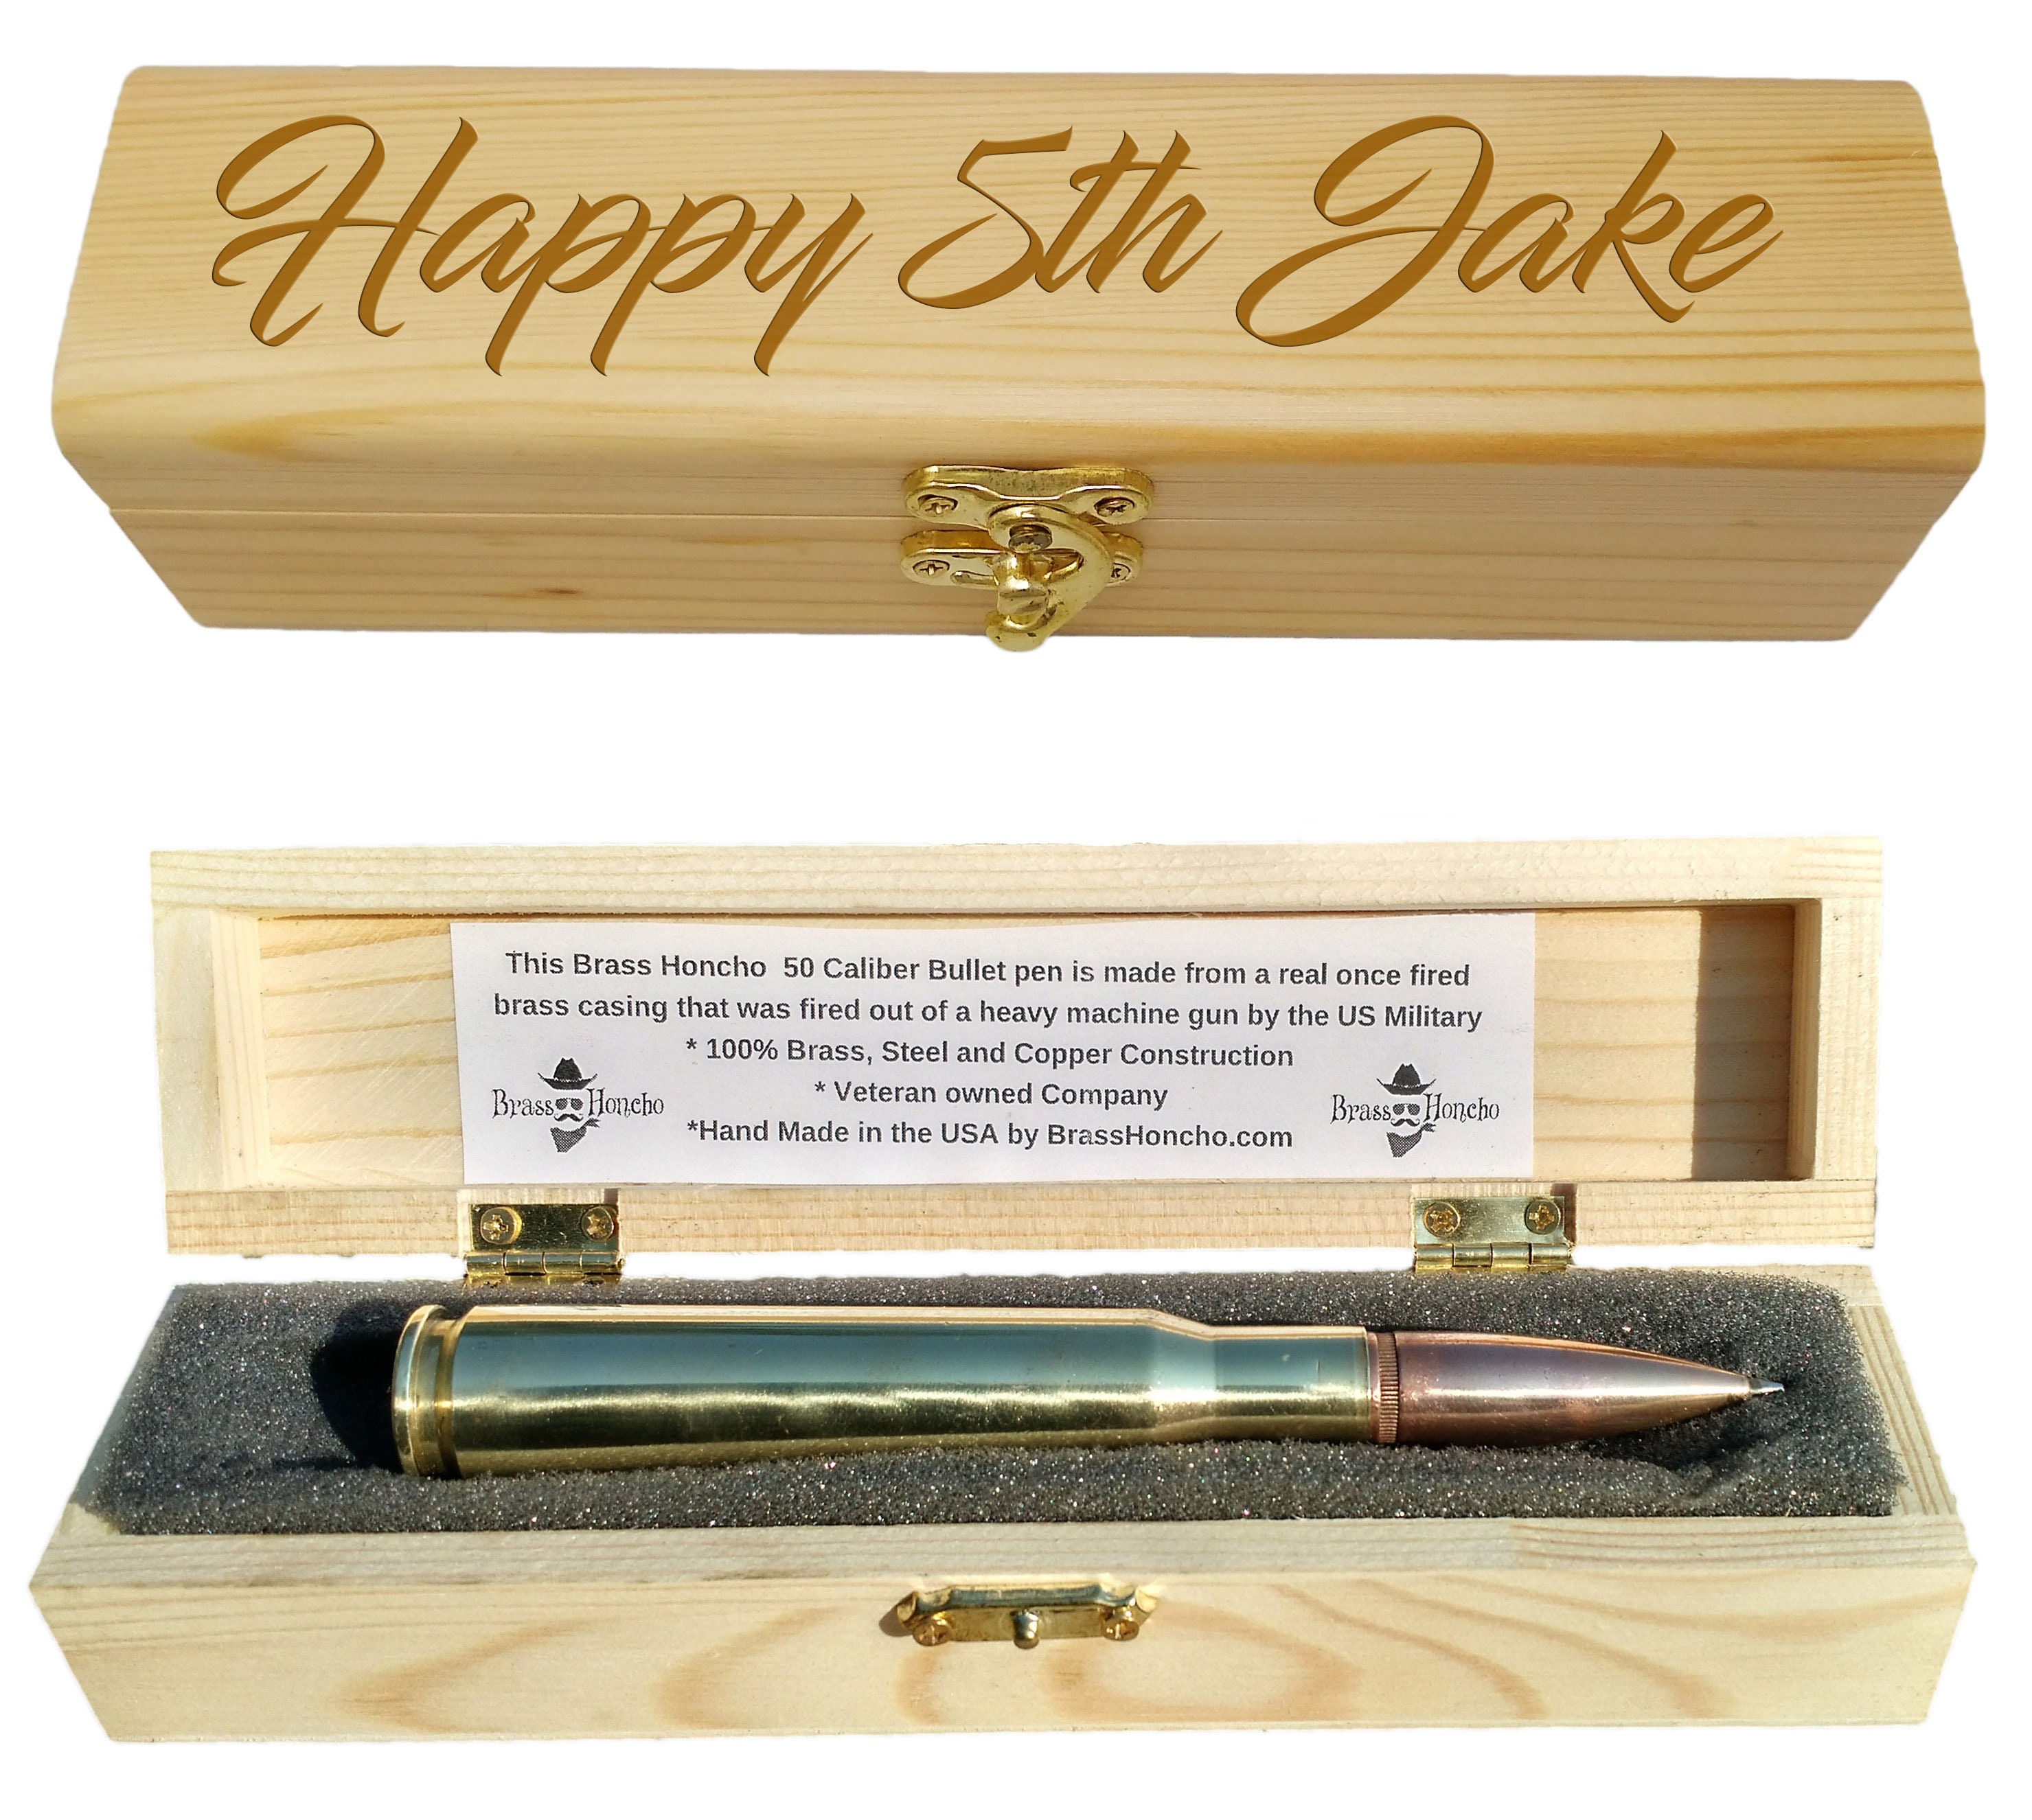 13. Bullet Pen & Engraved Gift Box